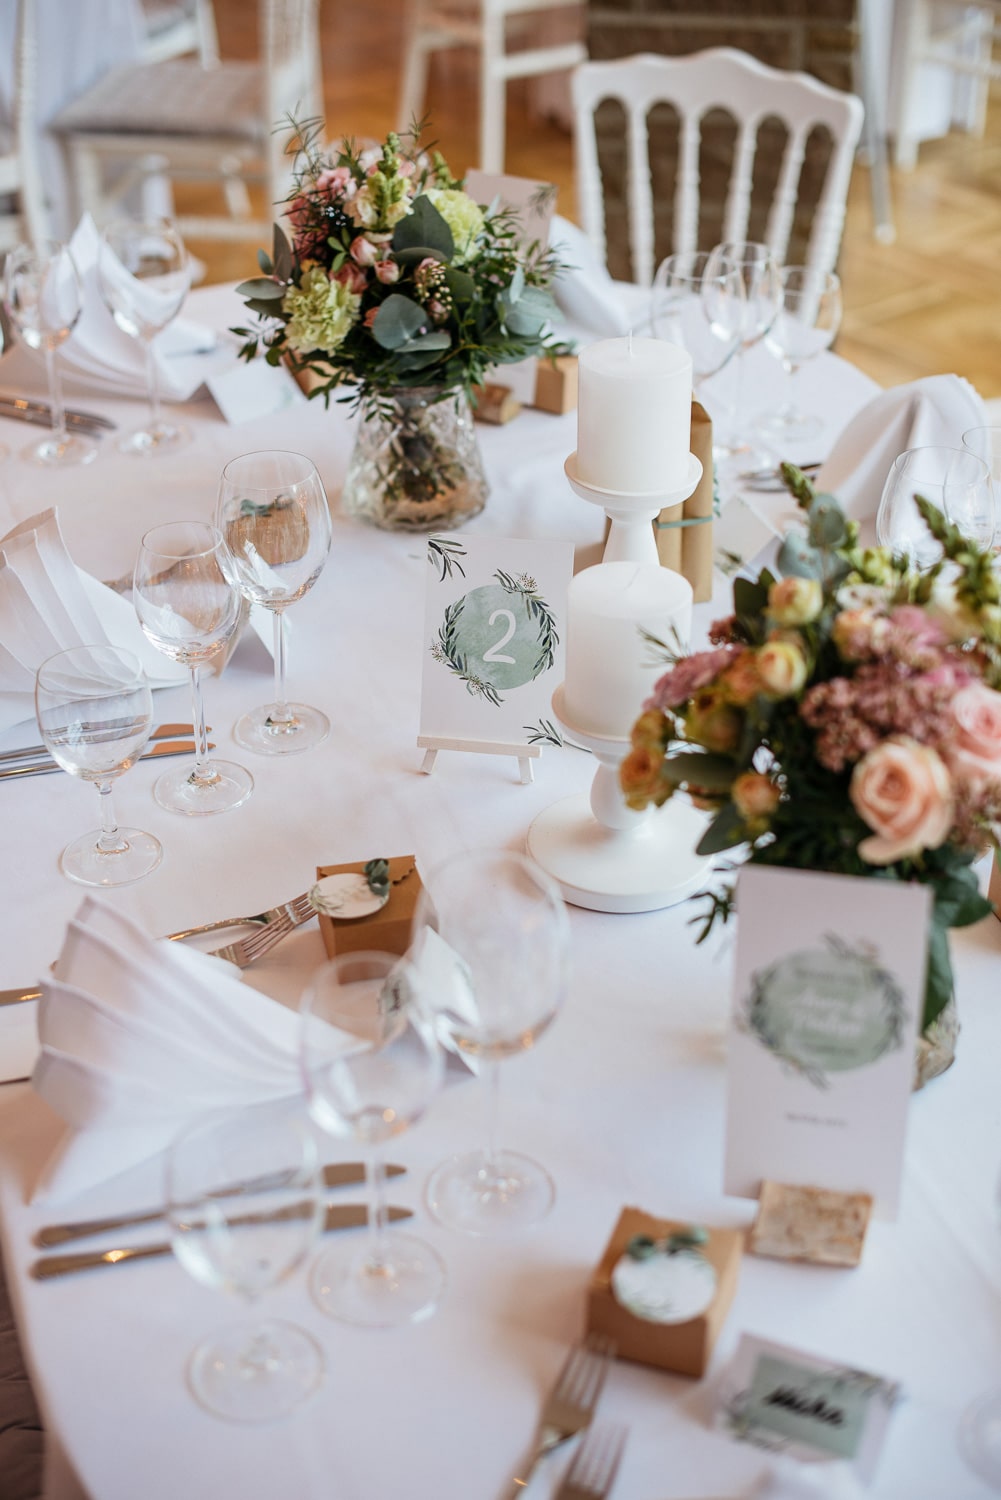 Tischdekoration Hochzeit – gesehen bei frauimmer-herrewig.de